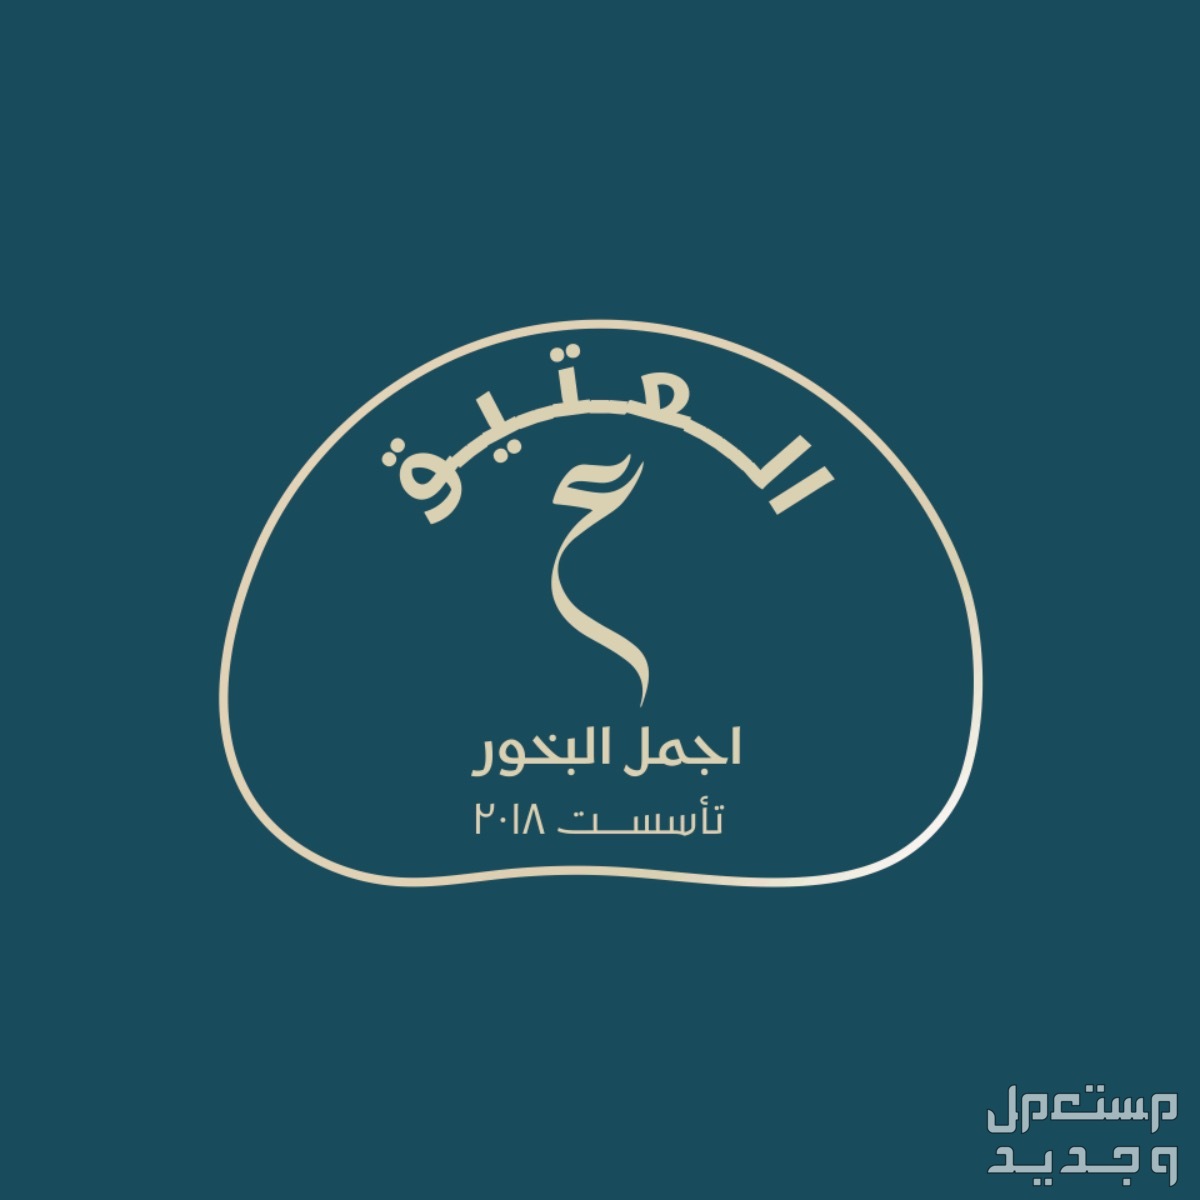 تصميم شعارات وكروت زواج وشهادات و cv شعار براند عطور